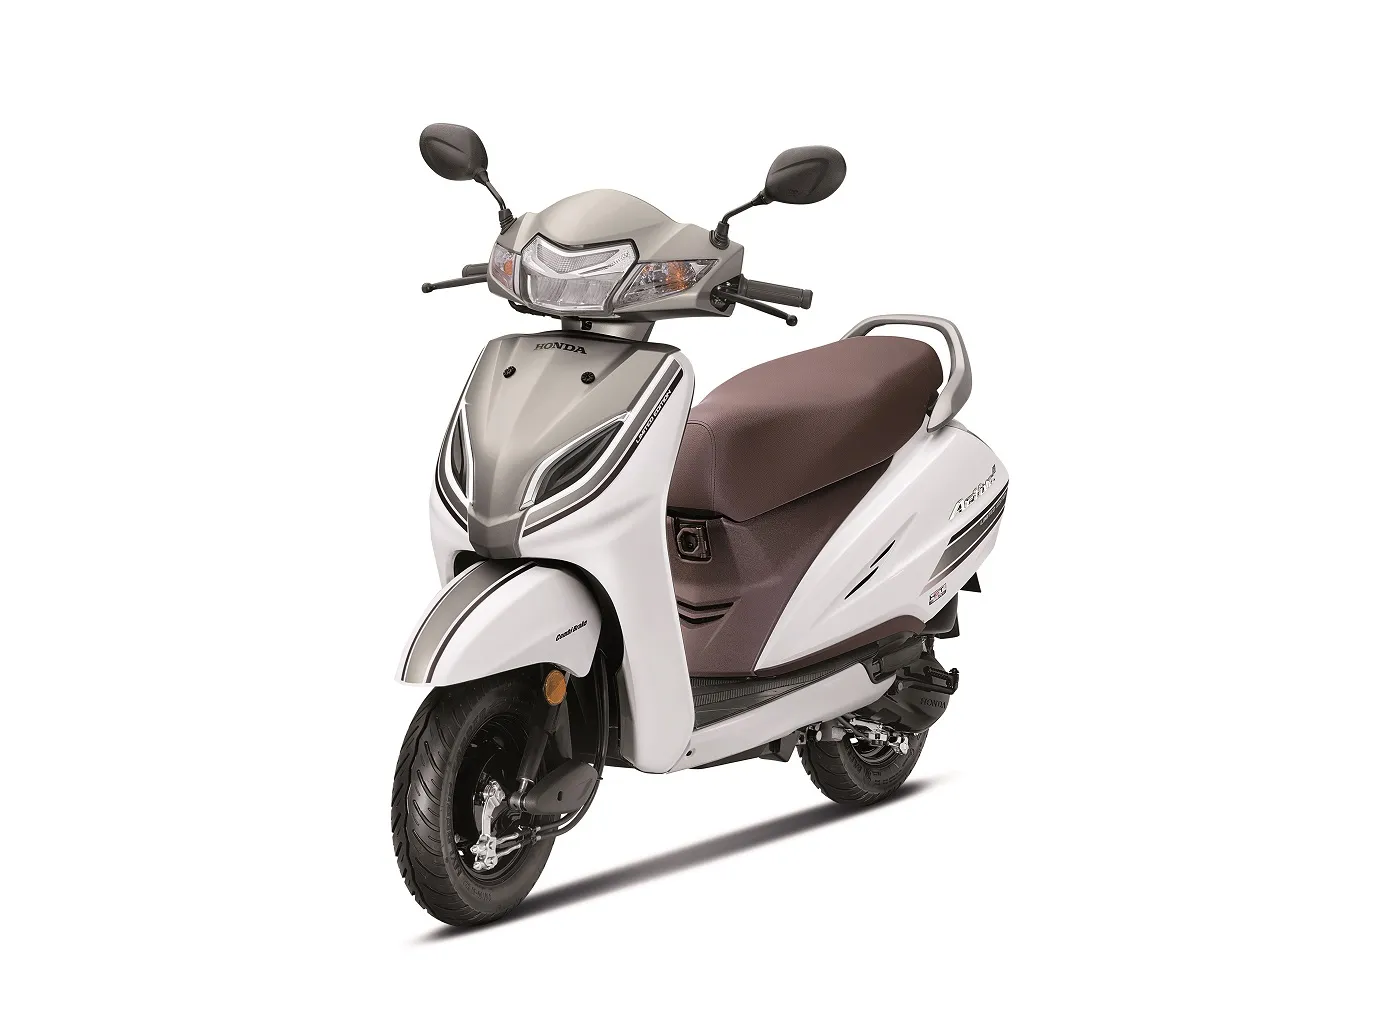 Honda Dio 2019 Model Price